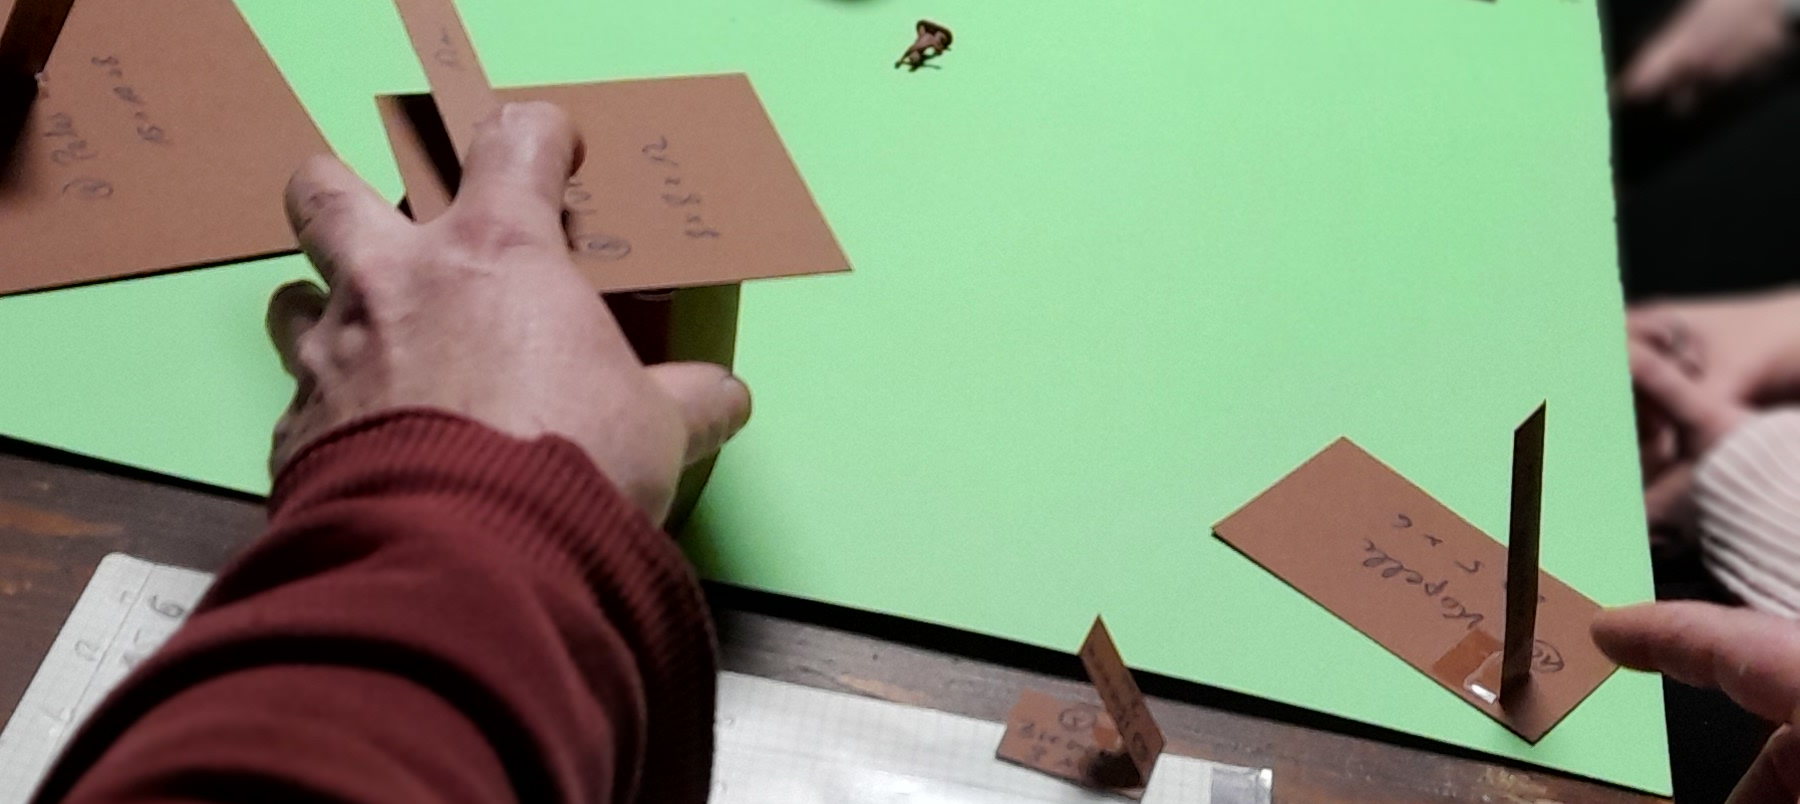 Eine Hand bewegt Modelle aus Pappe auf einer grünen Oberfläche.